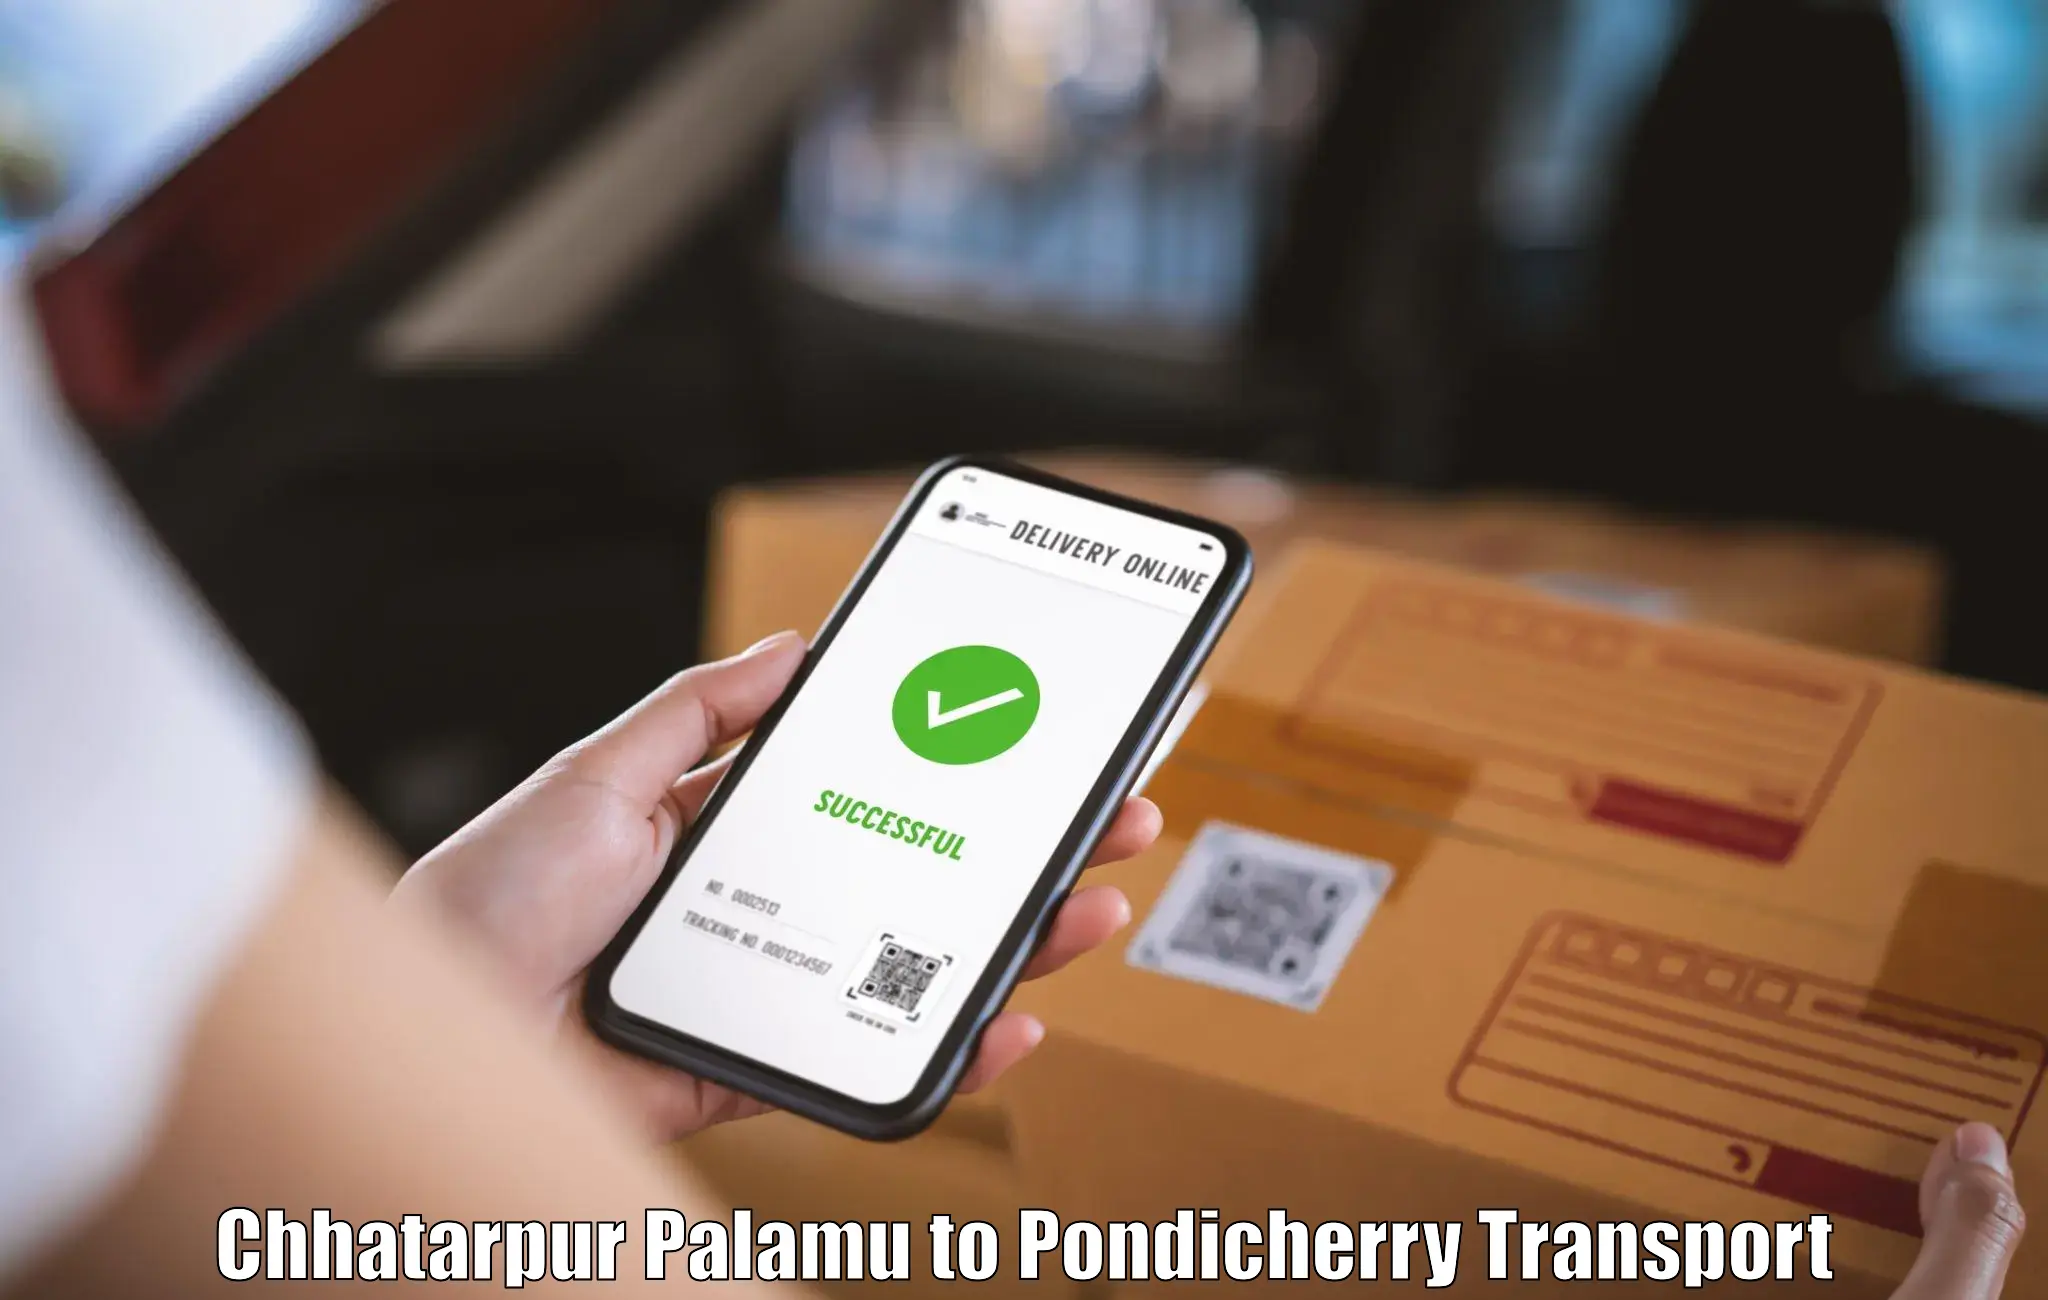 Transport in sharing Chhatarpur Palamu to Pondicherry